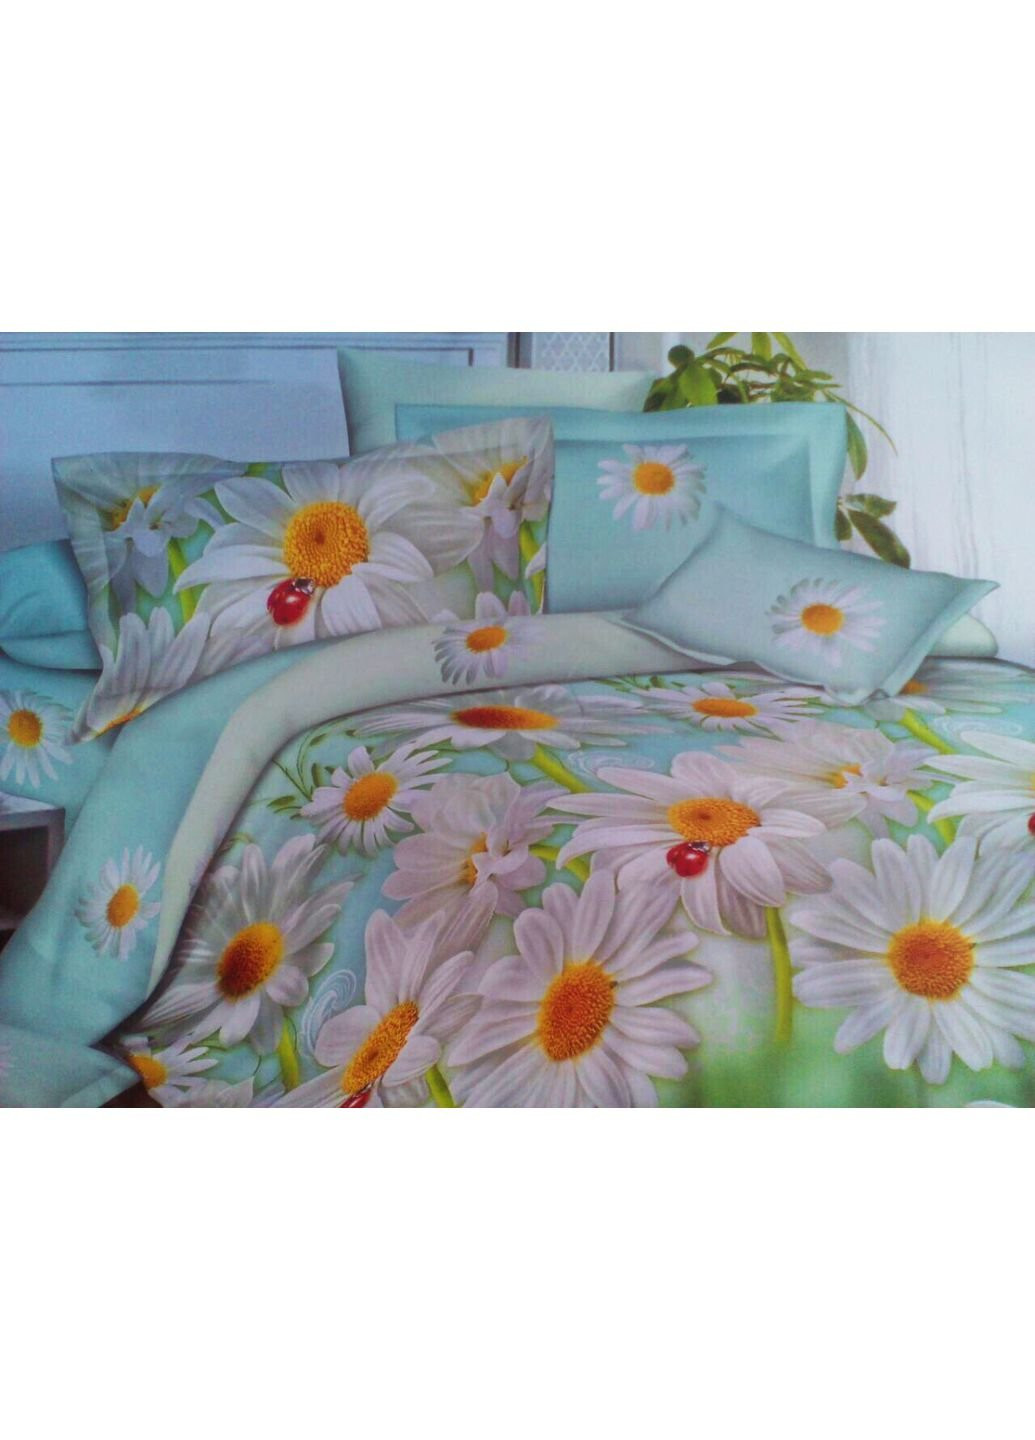 Комплект постельного белья от украинского производителя Polycotton Двуспальный 90906 Moda (253661701)